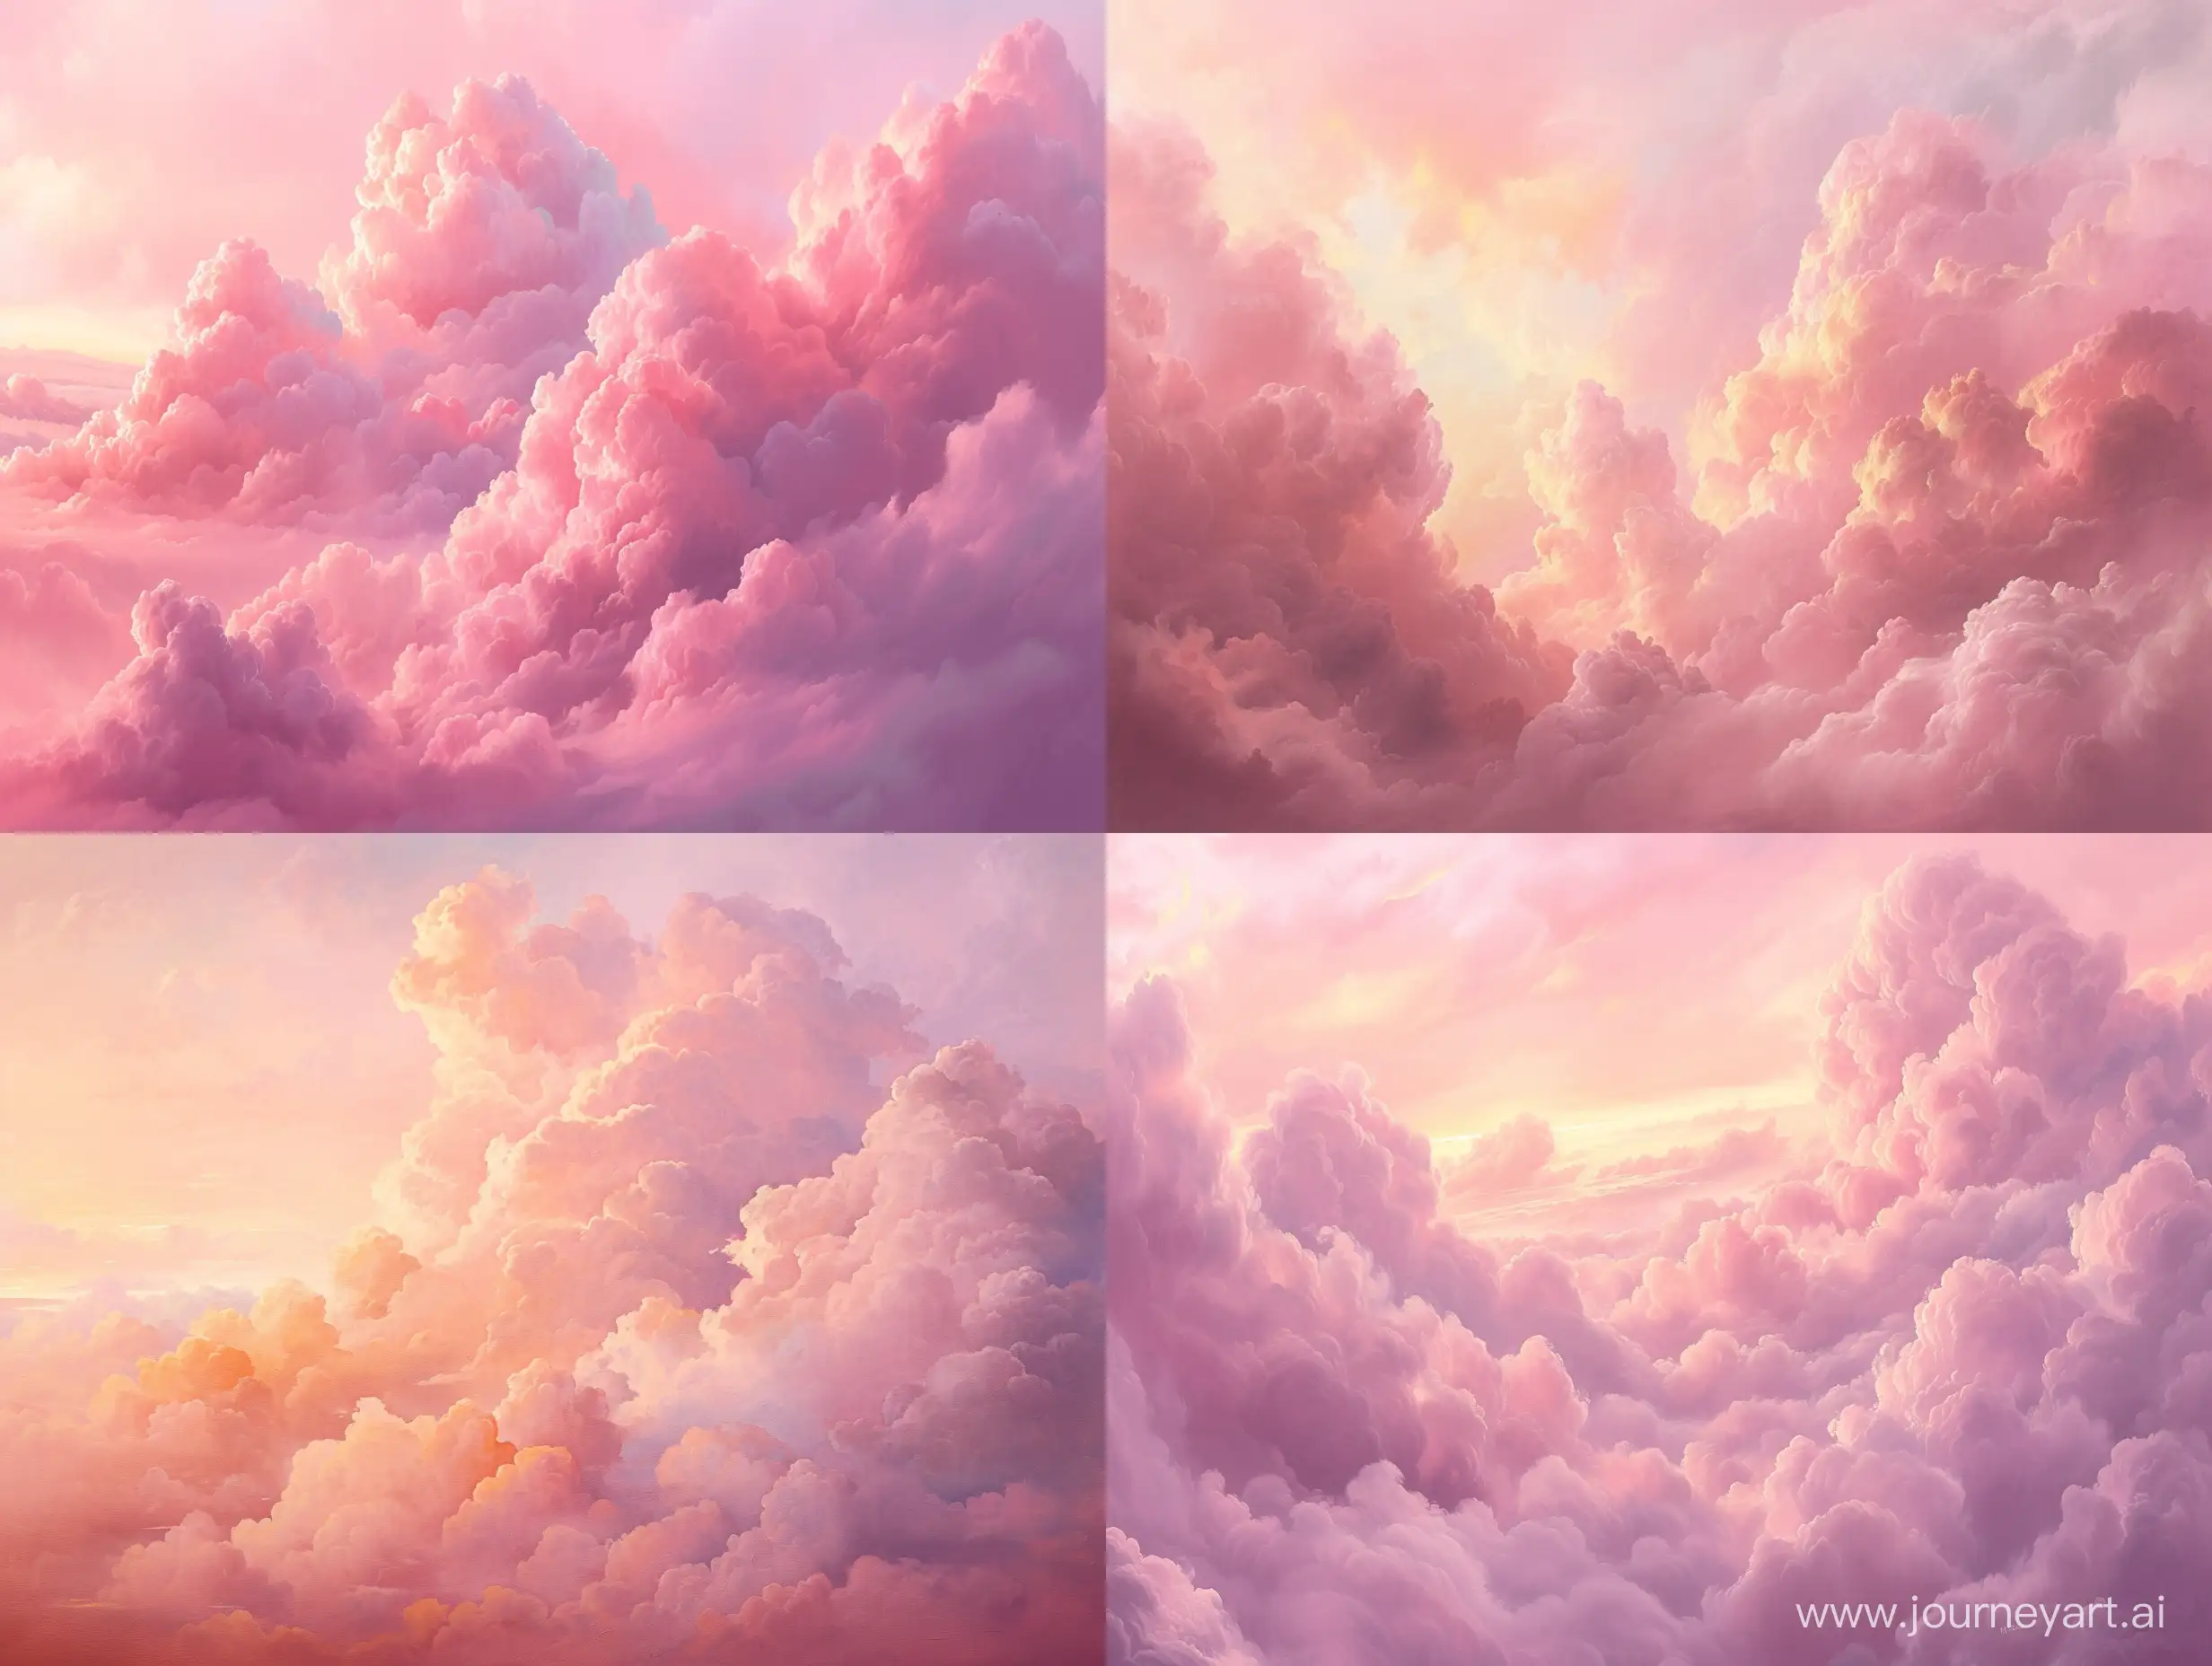 油画，柔和的粉红色，蓬松的云朵，棉花糖质地，柔和的色调，梦幻的氛围，空灵的美，日落，晚霞，光滑，层次感丰富，水彩画风格，体积光，8K，高清，超现实主义